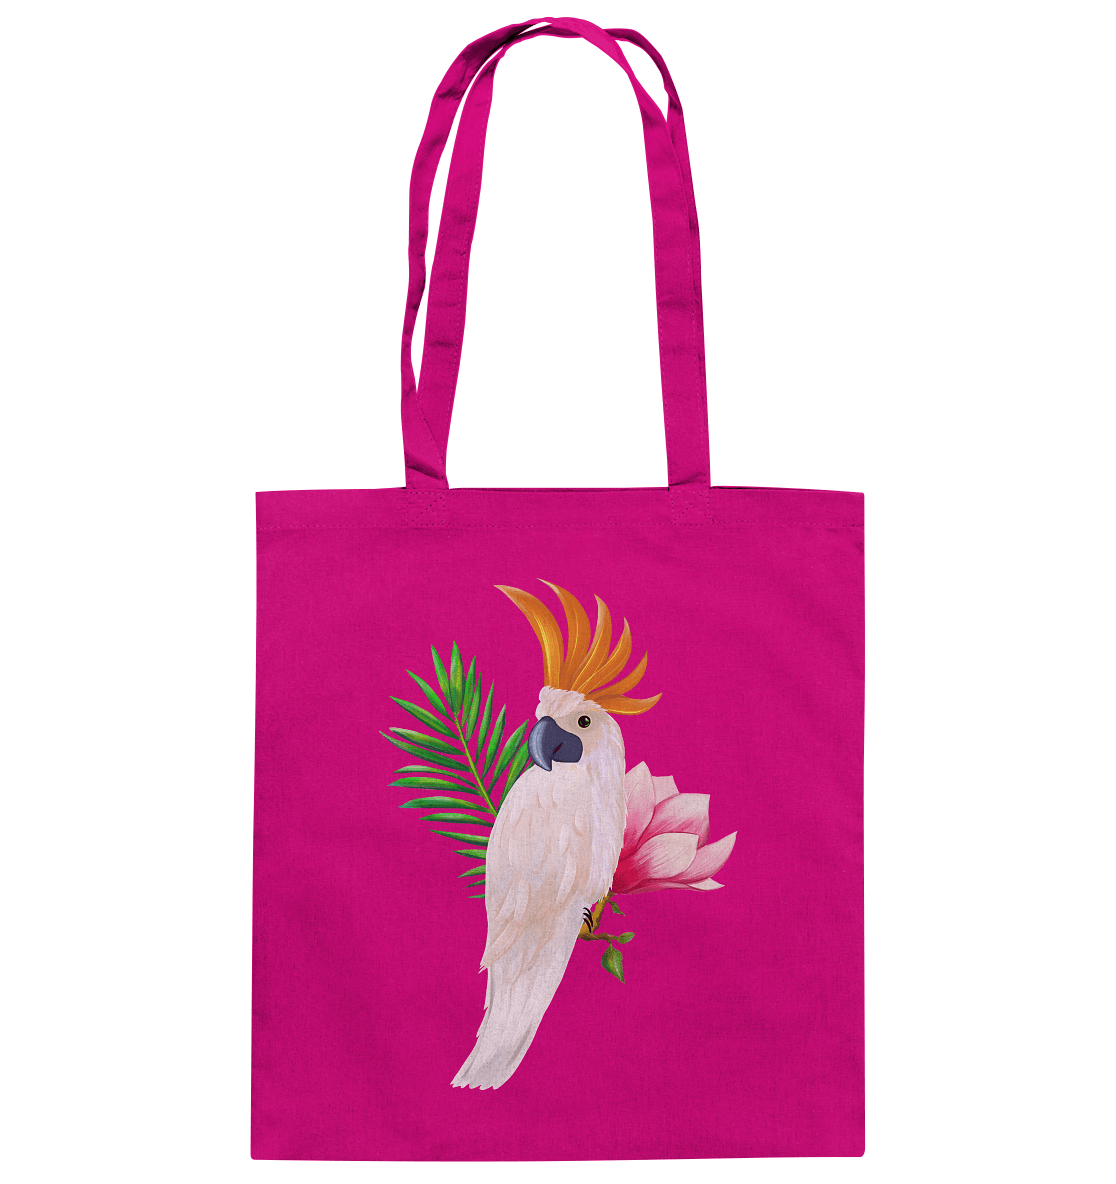 Baumwolltasche in Raspberry Himbeere Fuchsia Farben mit handgezeichneten Papagei